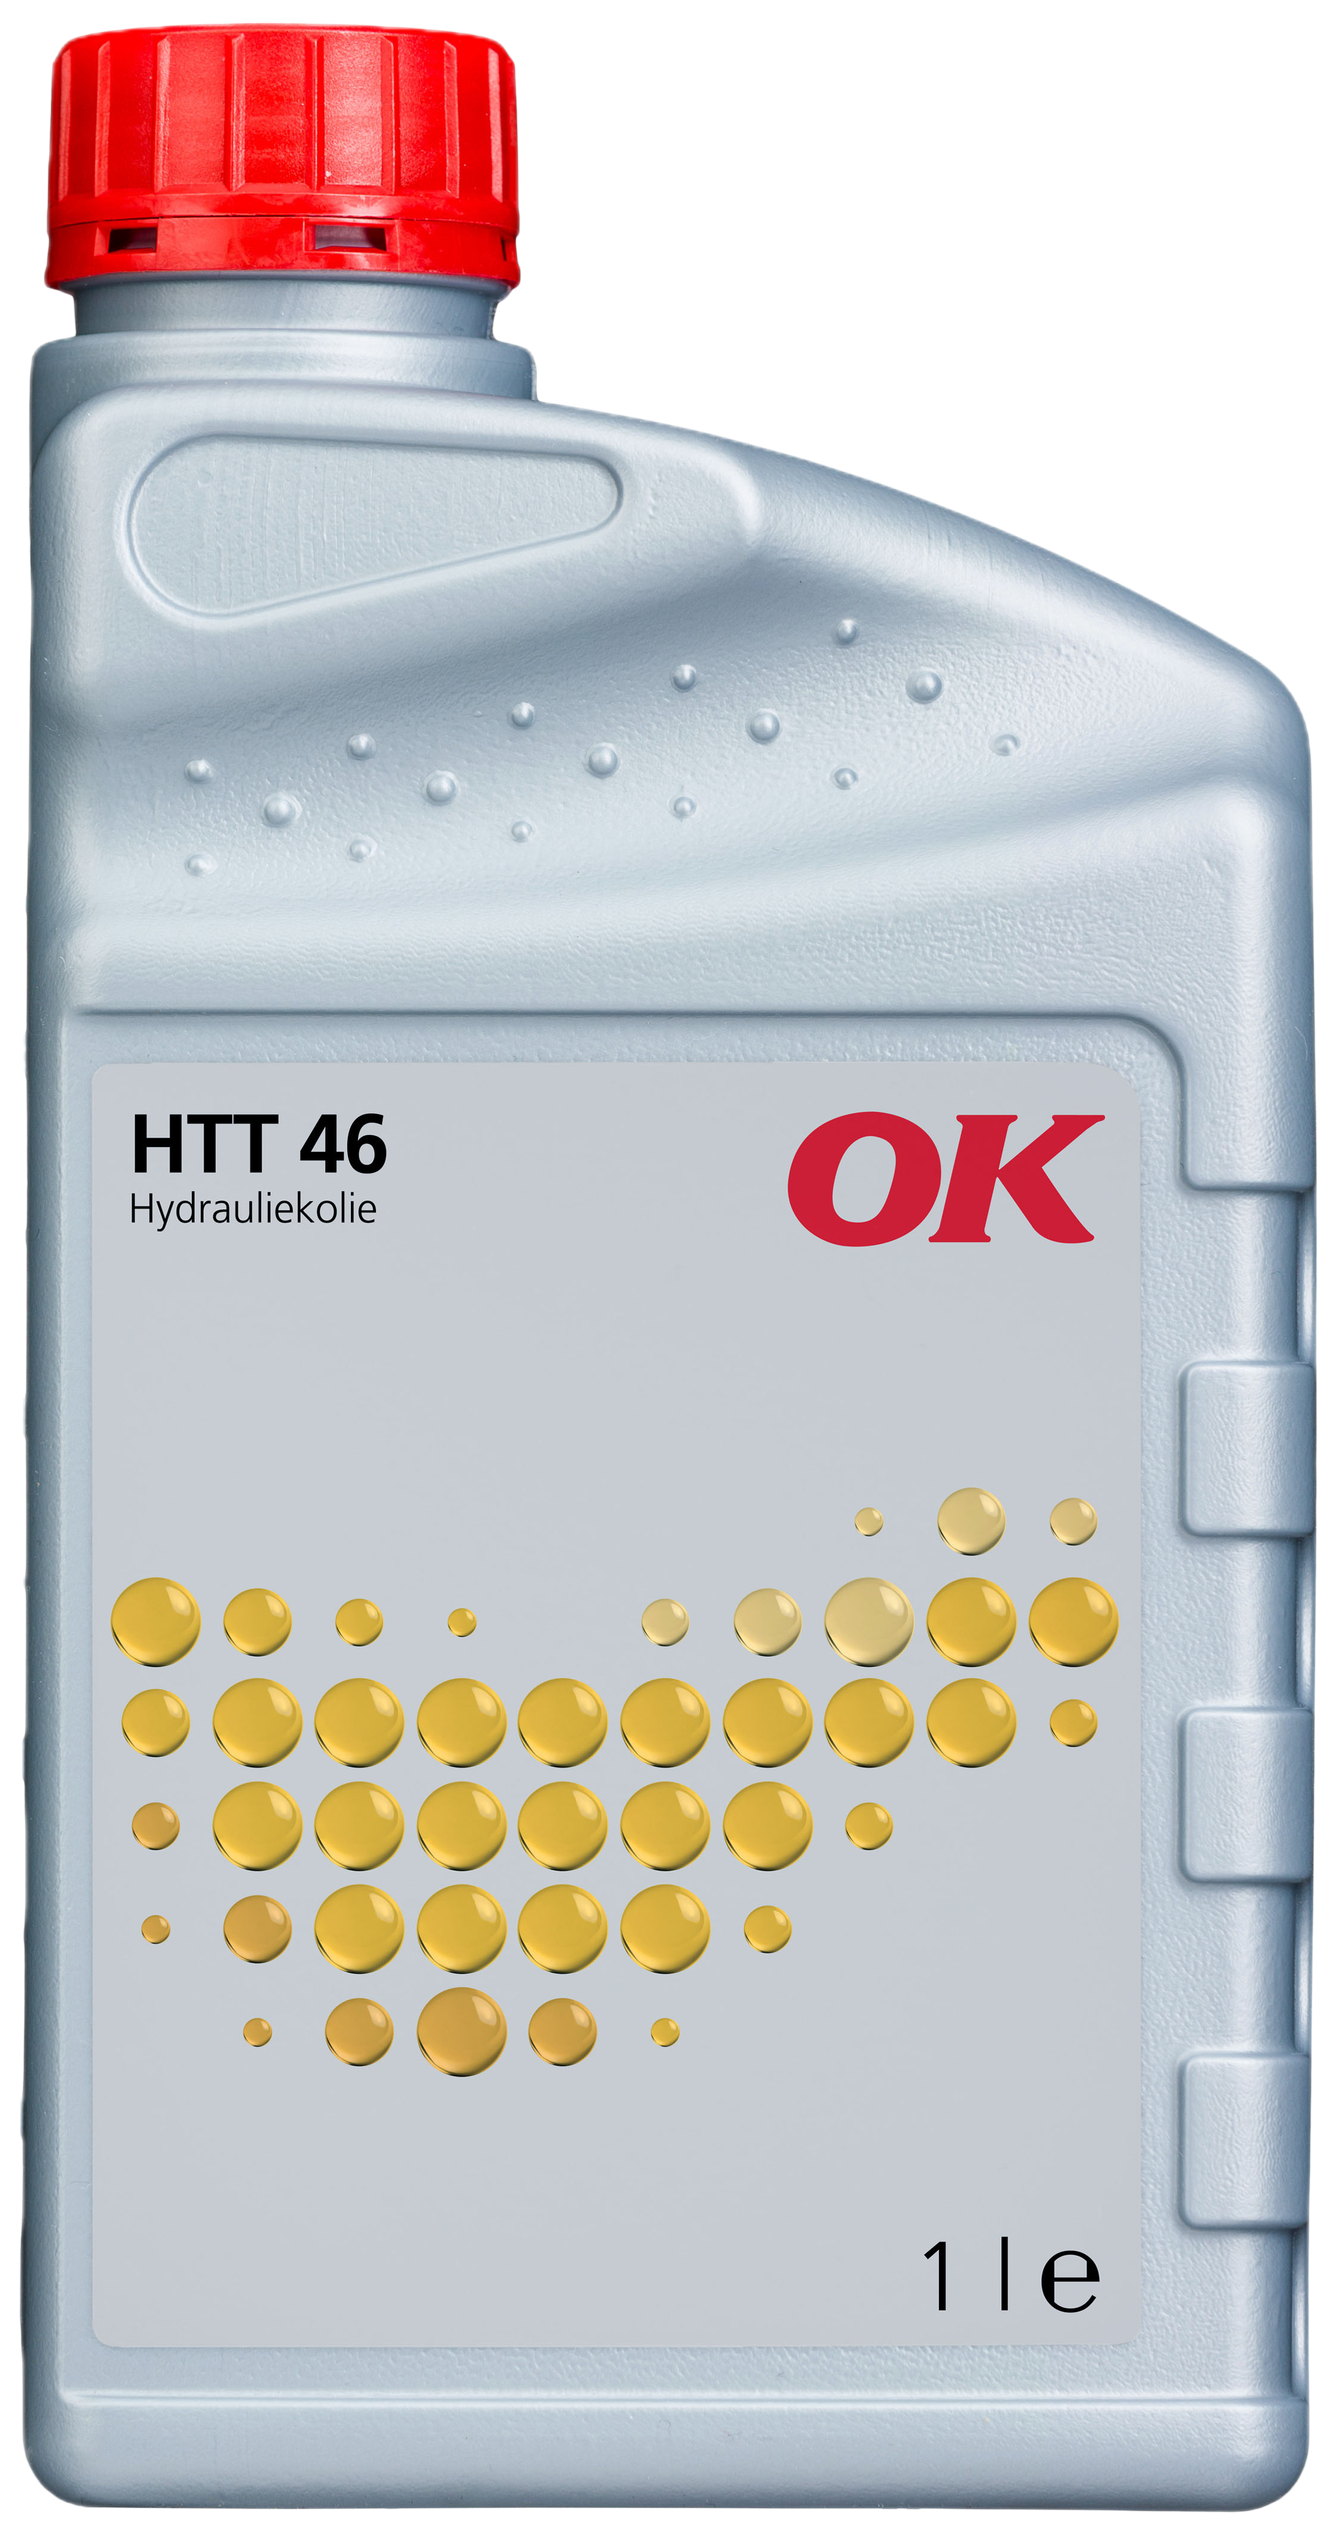 O2405-1 OK HTT 46 is een hydraulische olie vervaardigd uit een speciale basisolie en een uitgebalanceerd additievenpakket.